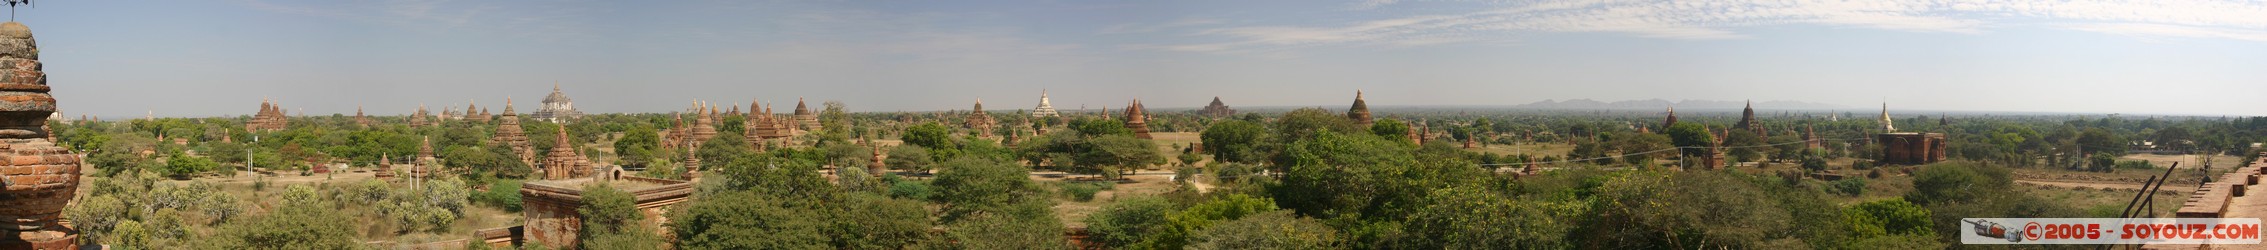 Bagan - Panorama from Mingala-zedi Pagoda
Mots-clés: myanmar Burma Birmanie panorama Ruines Pagode